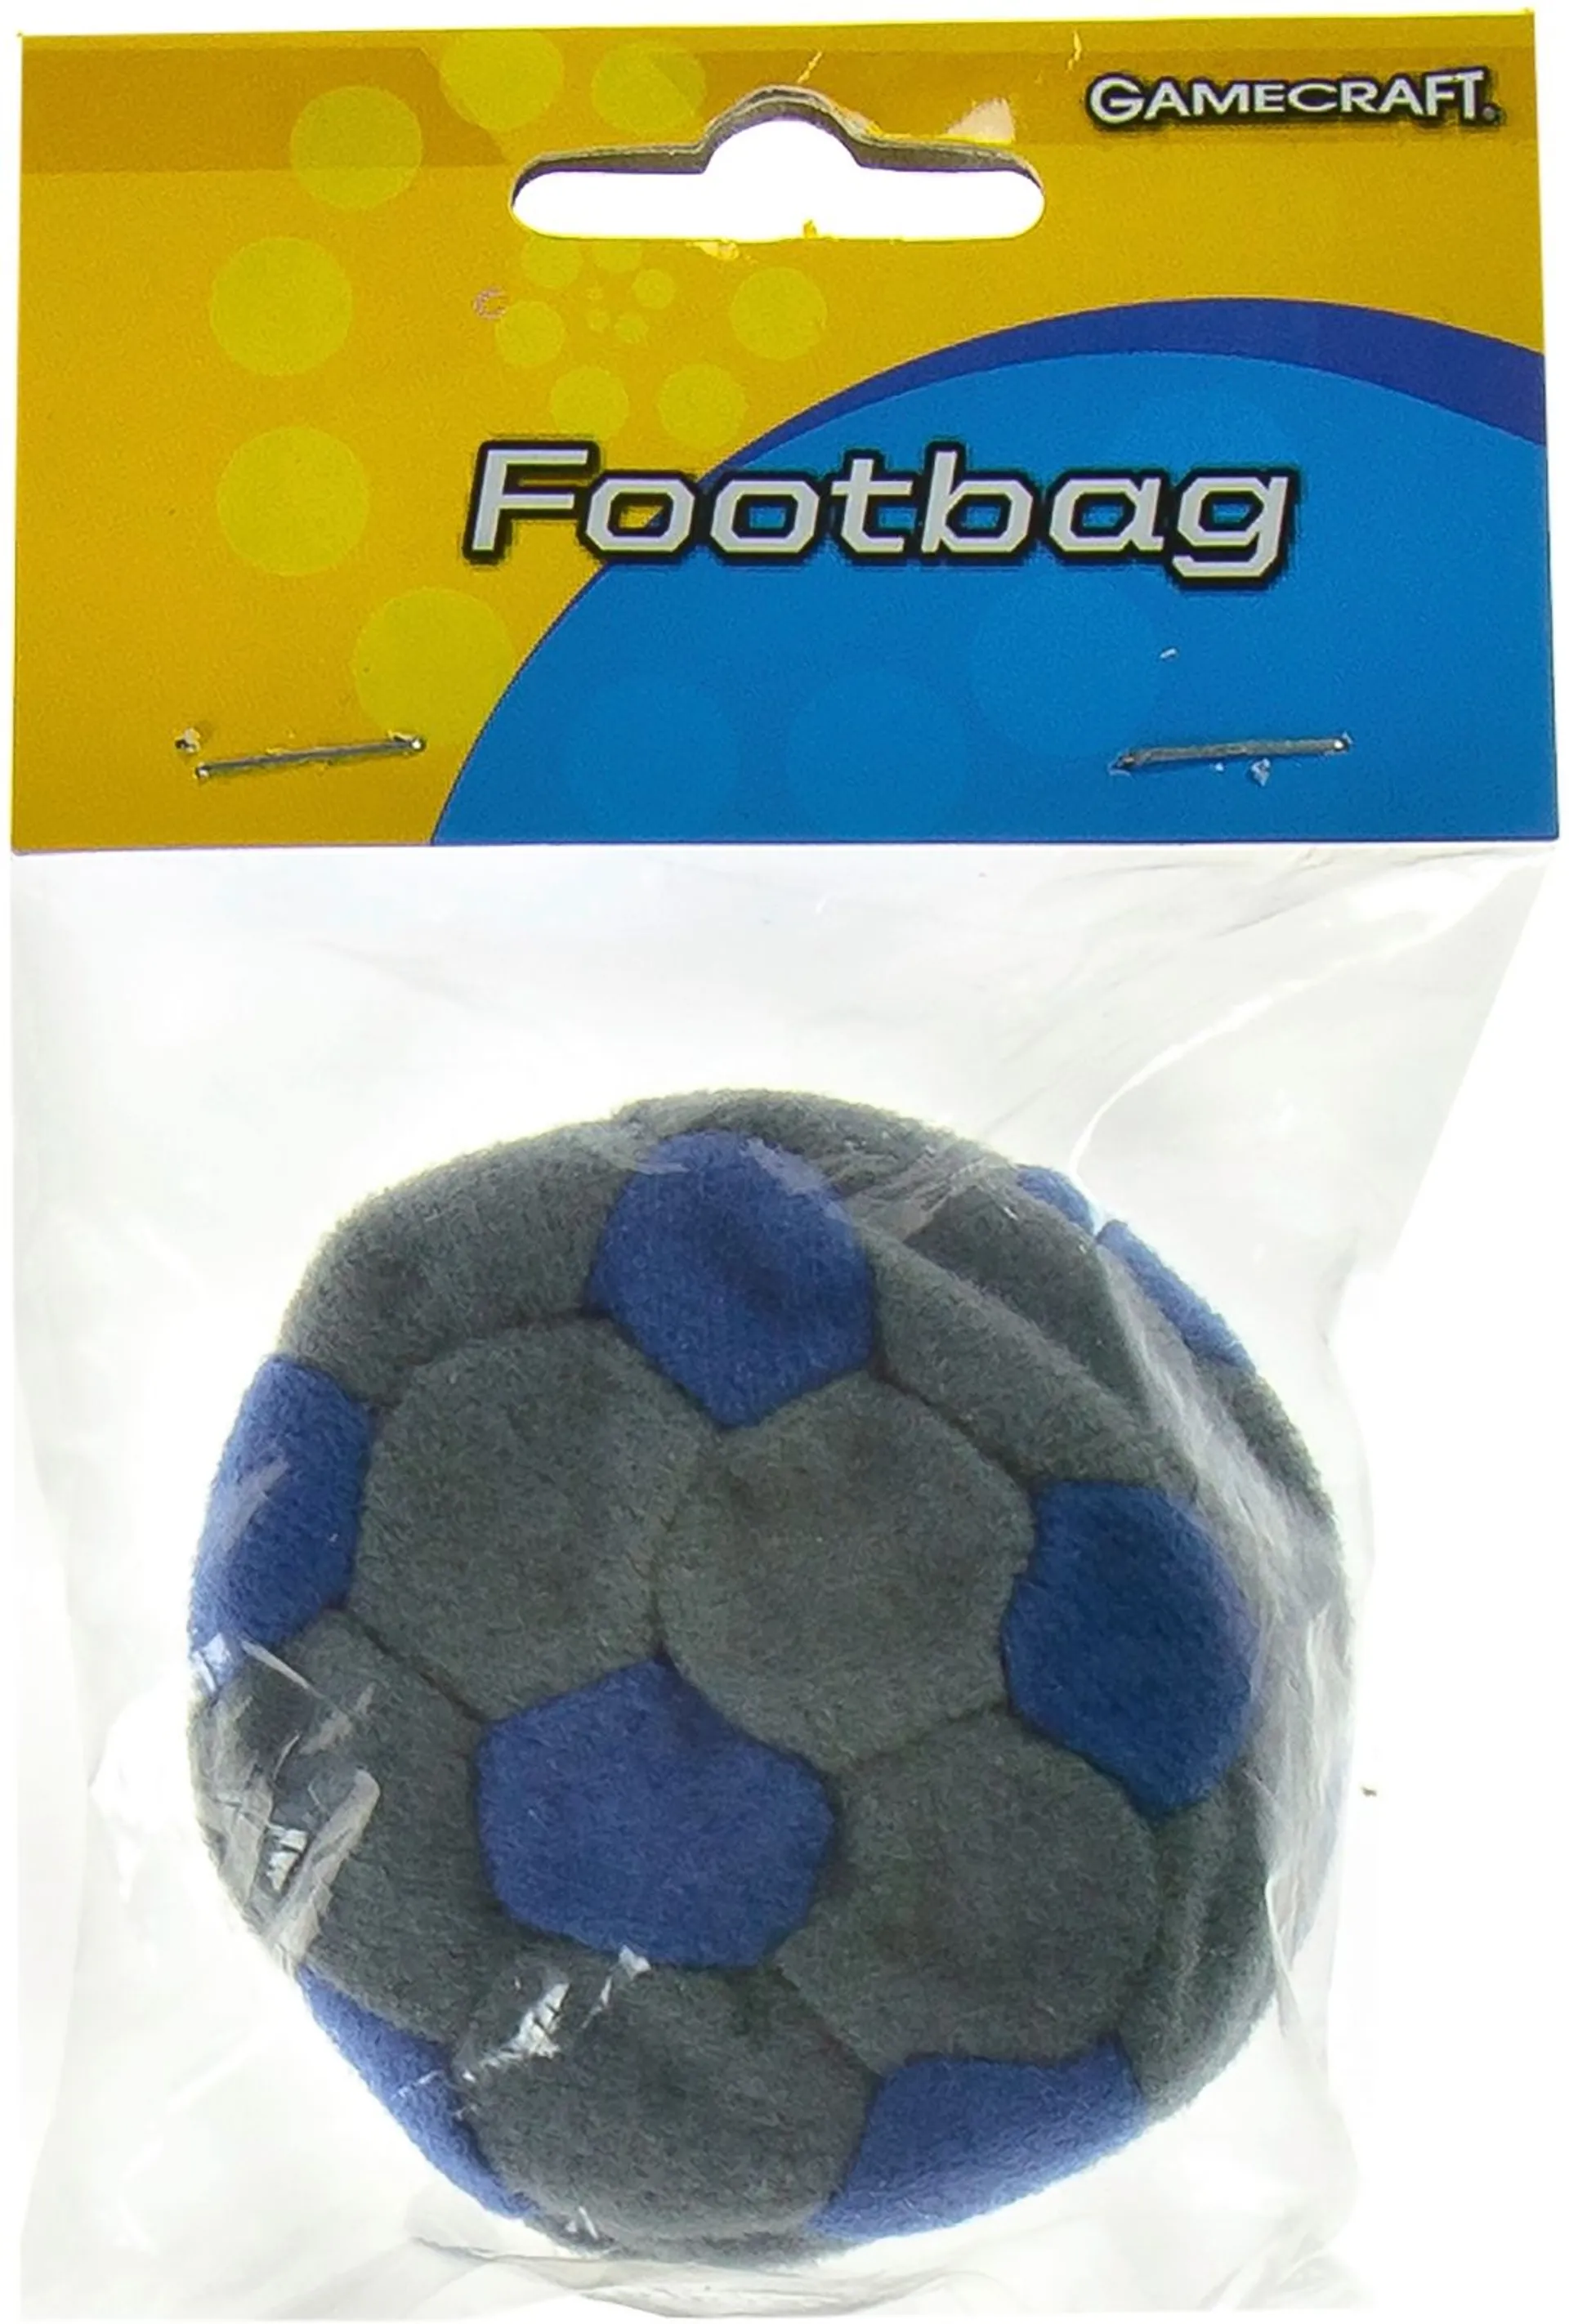 GameCraft footbag